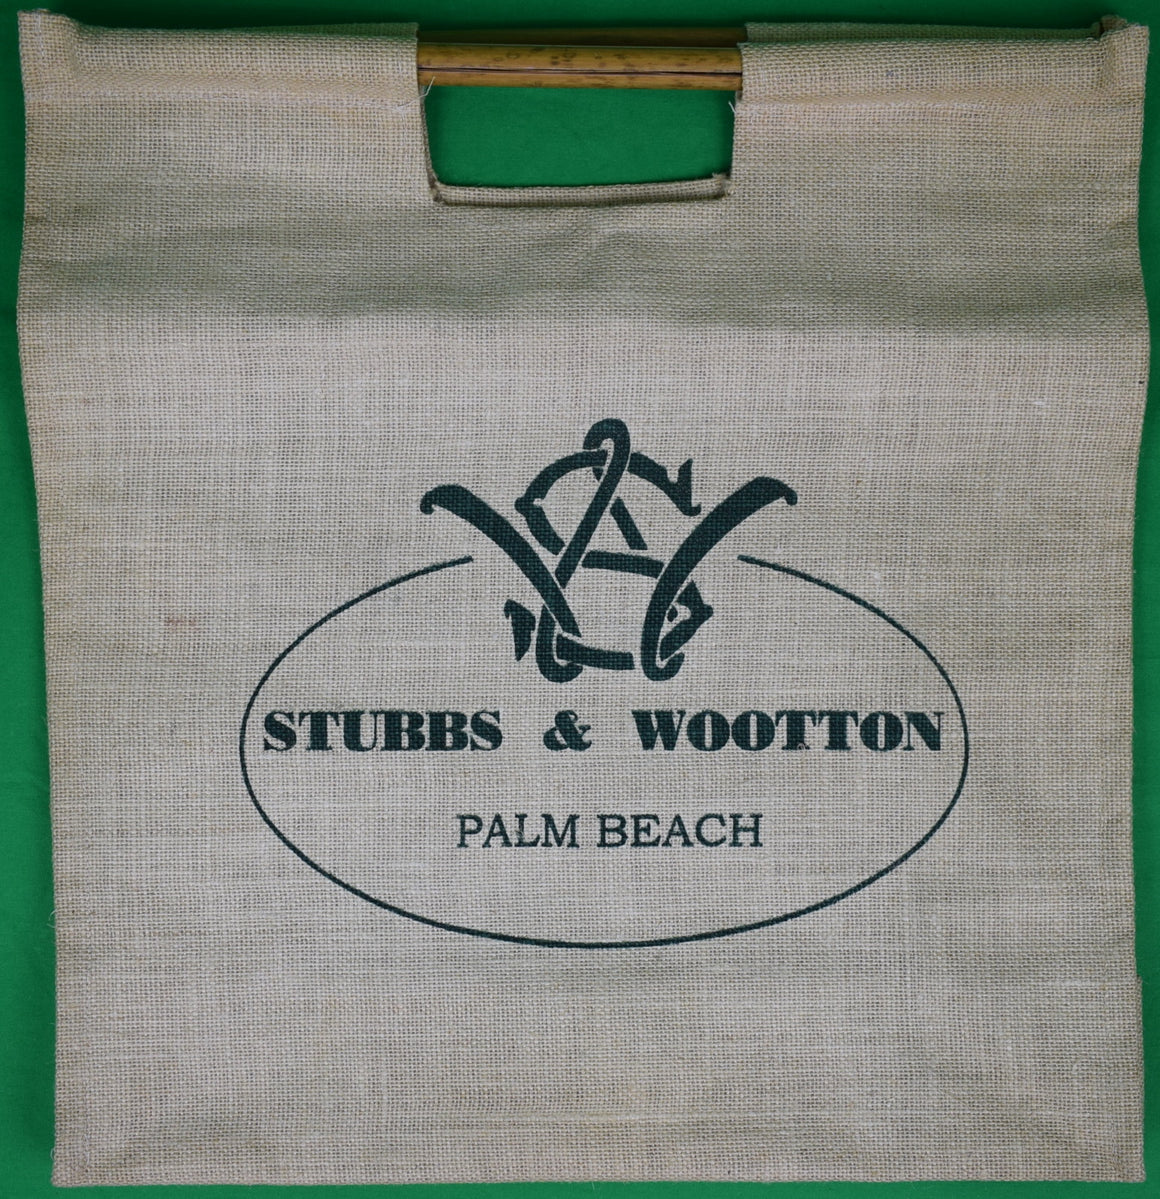 "Stubbs & Wootton Palm Beach Burlap Slipper Bag w/ Bamboo Handles"